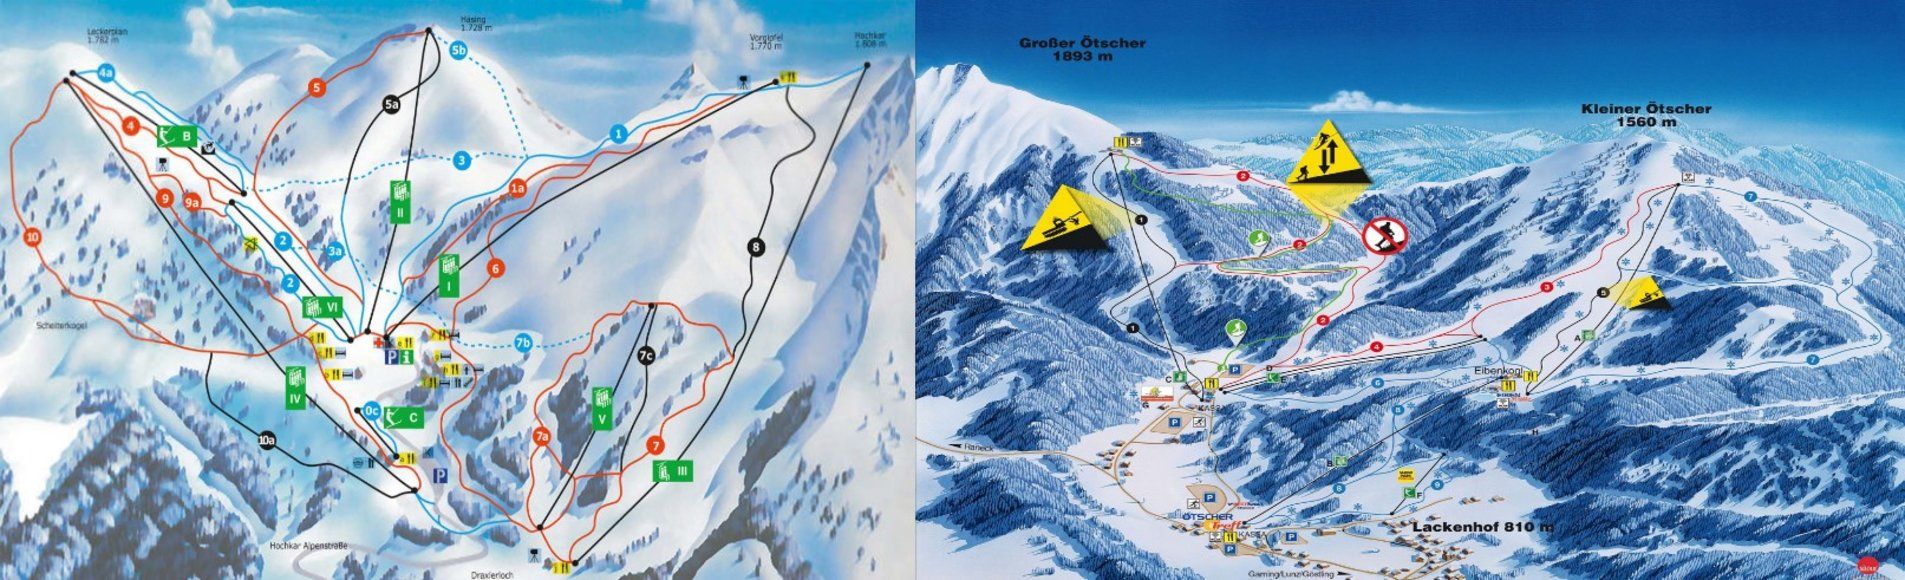 Pistenplan / Karte Skigebiet Göstling an der Ybbs, Österreich